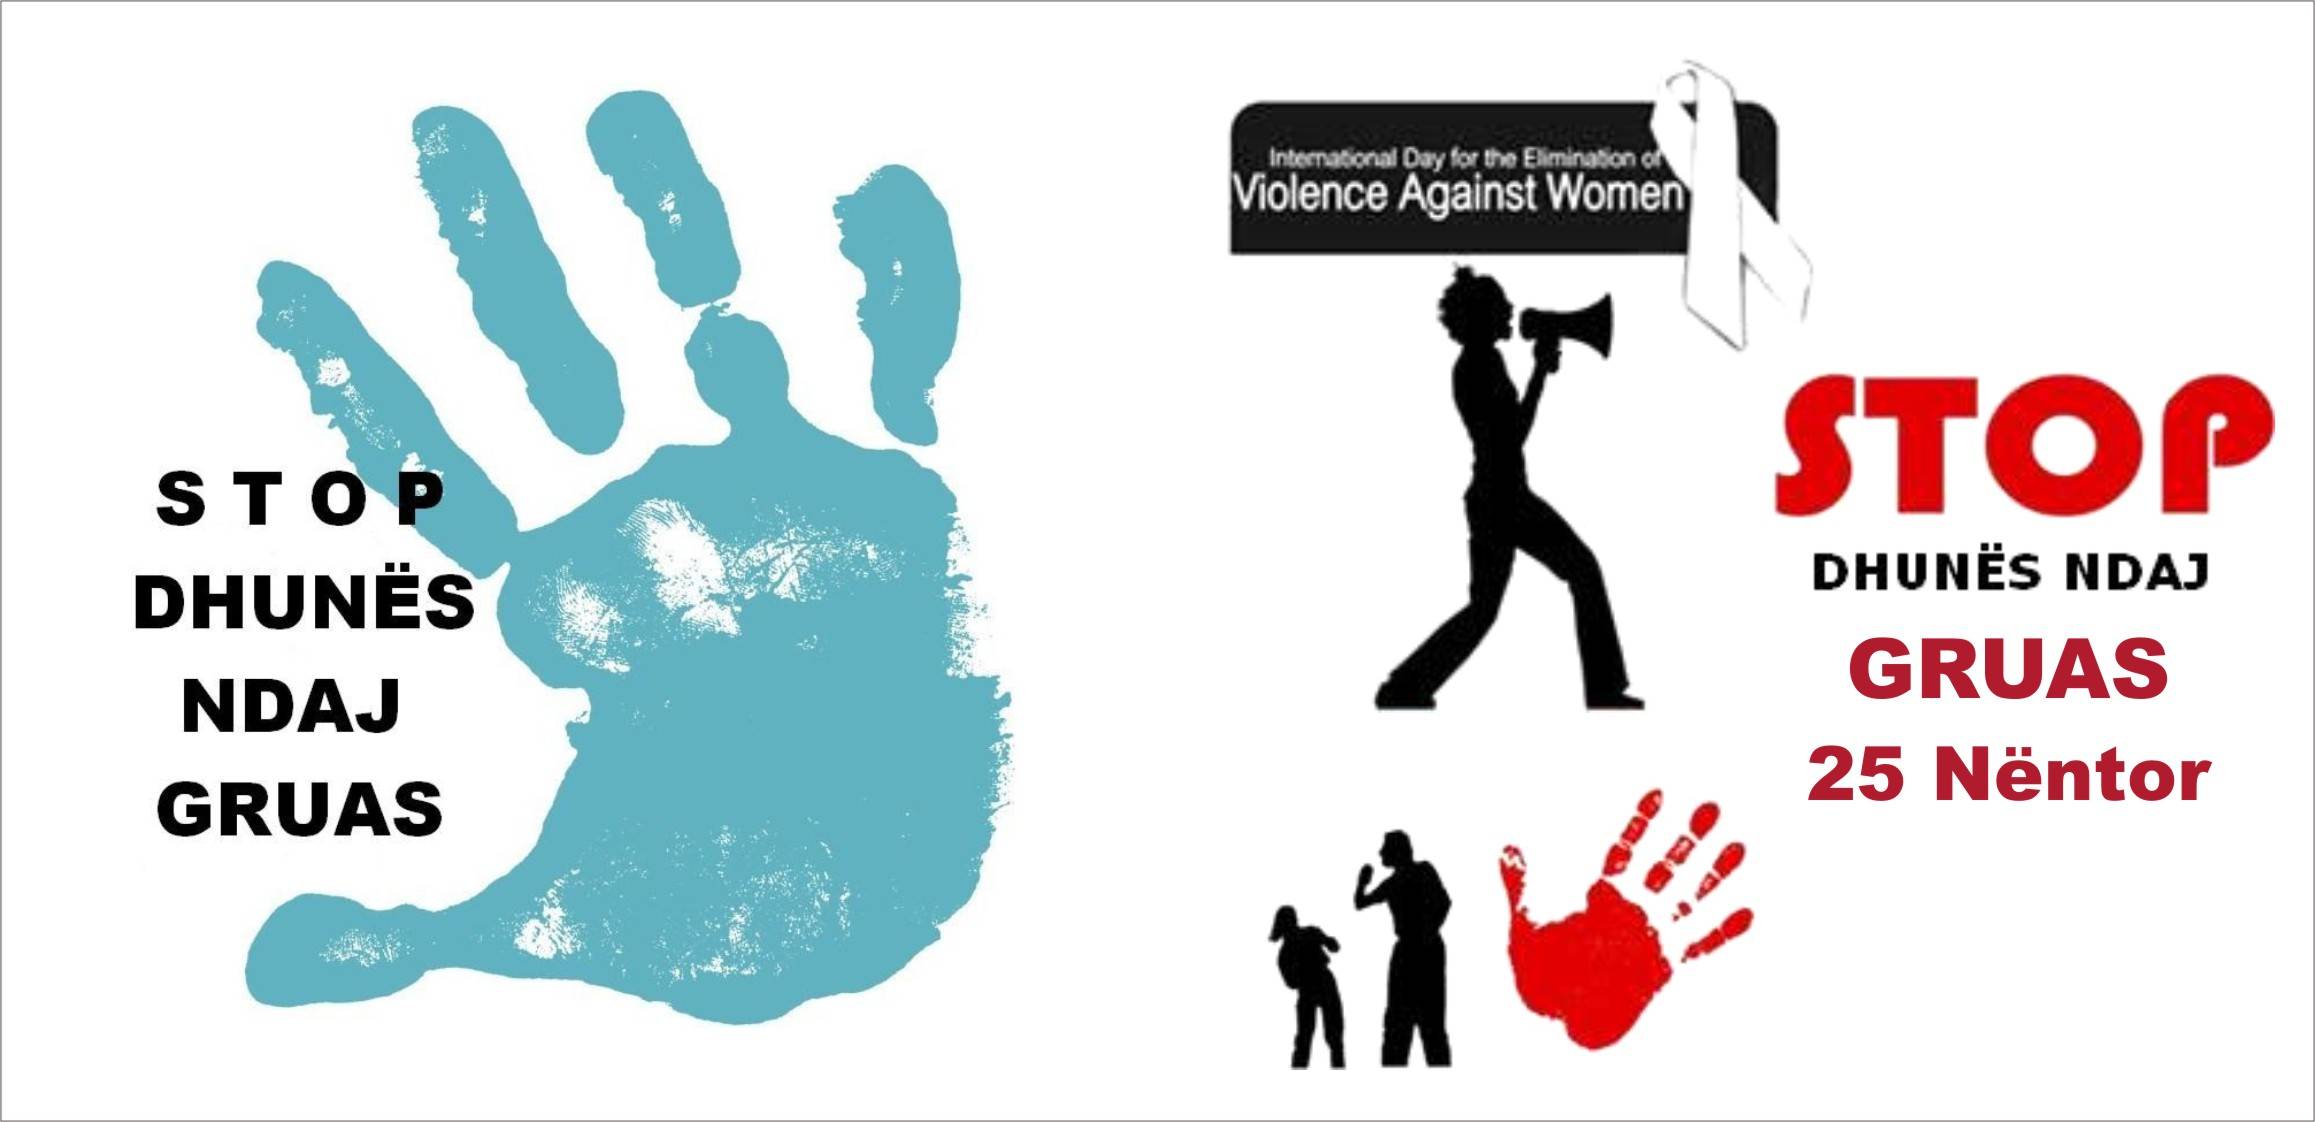 Sot nis fushata online për luftën kundër dhunës ndaj gruas